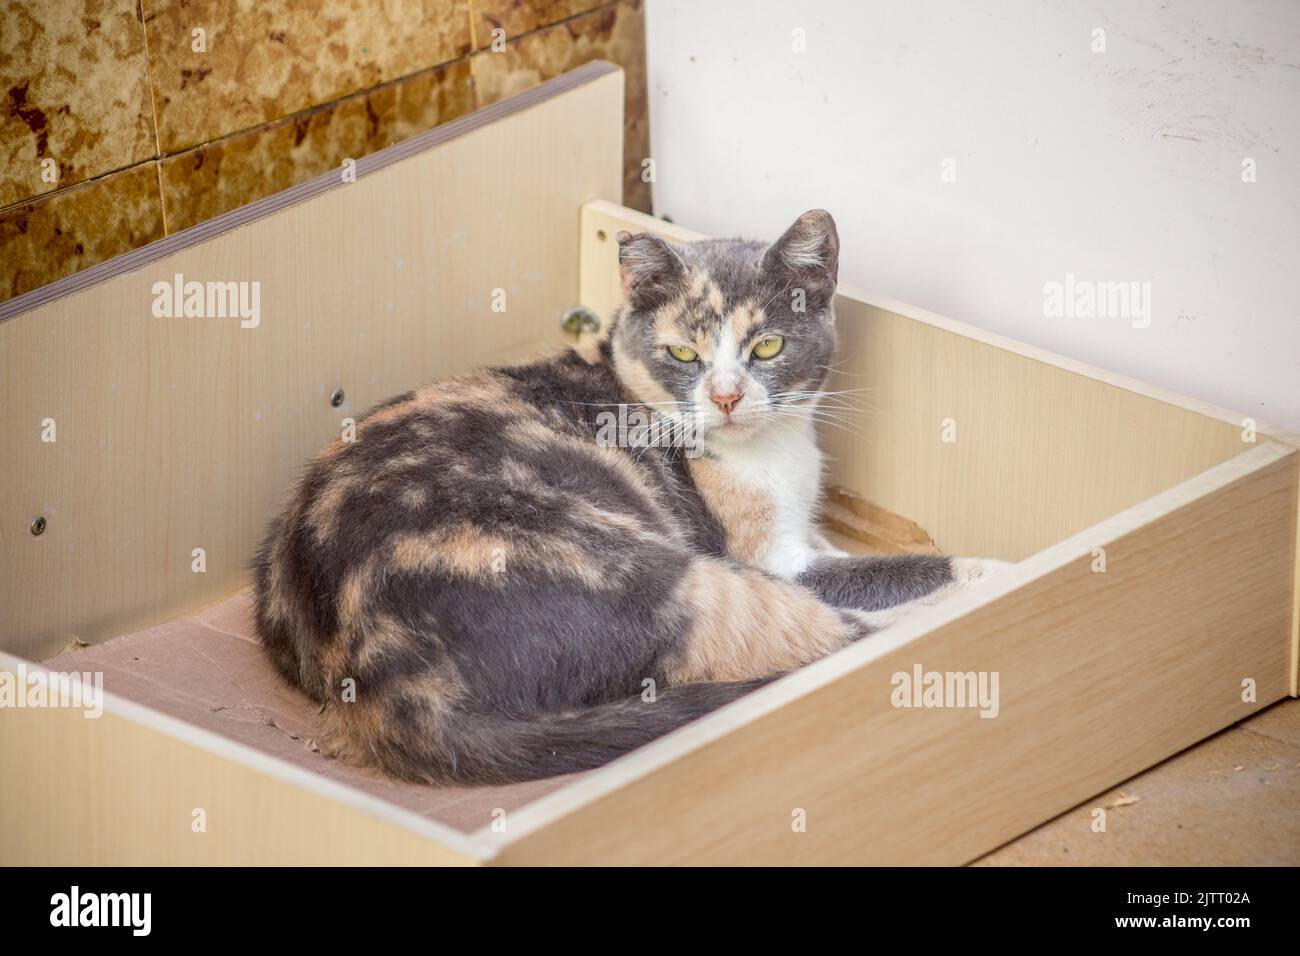 gatto tabby all'interno di un cassetto armadio. Foto Stock